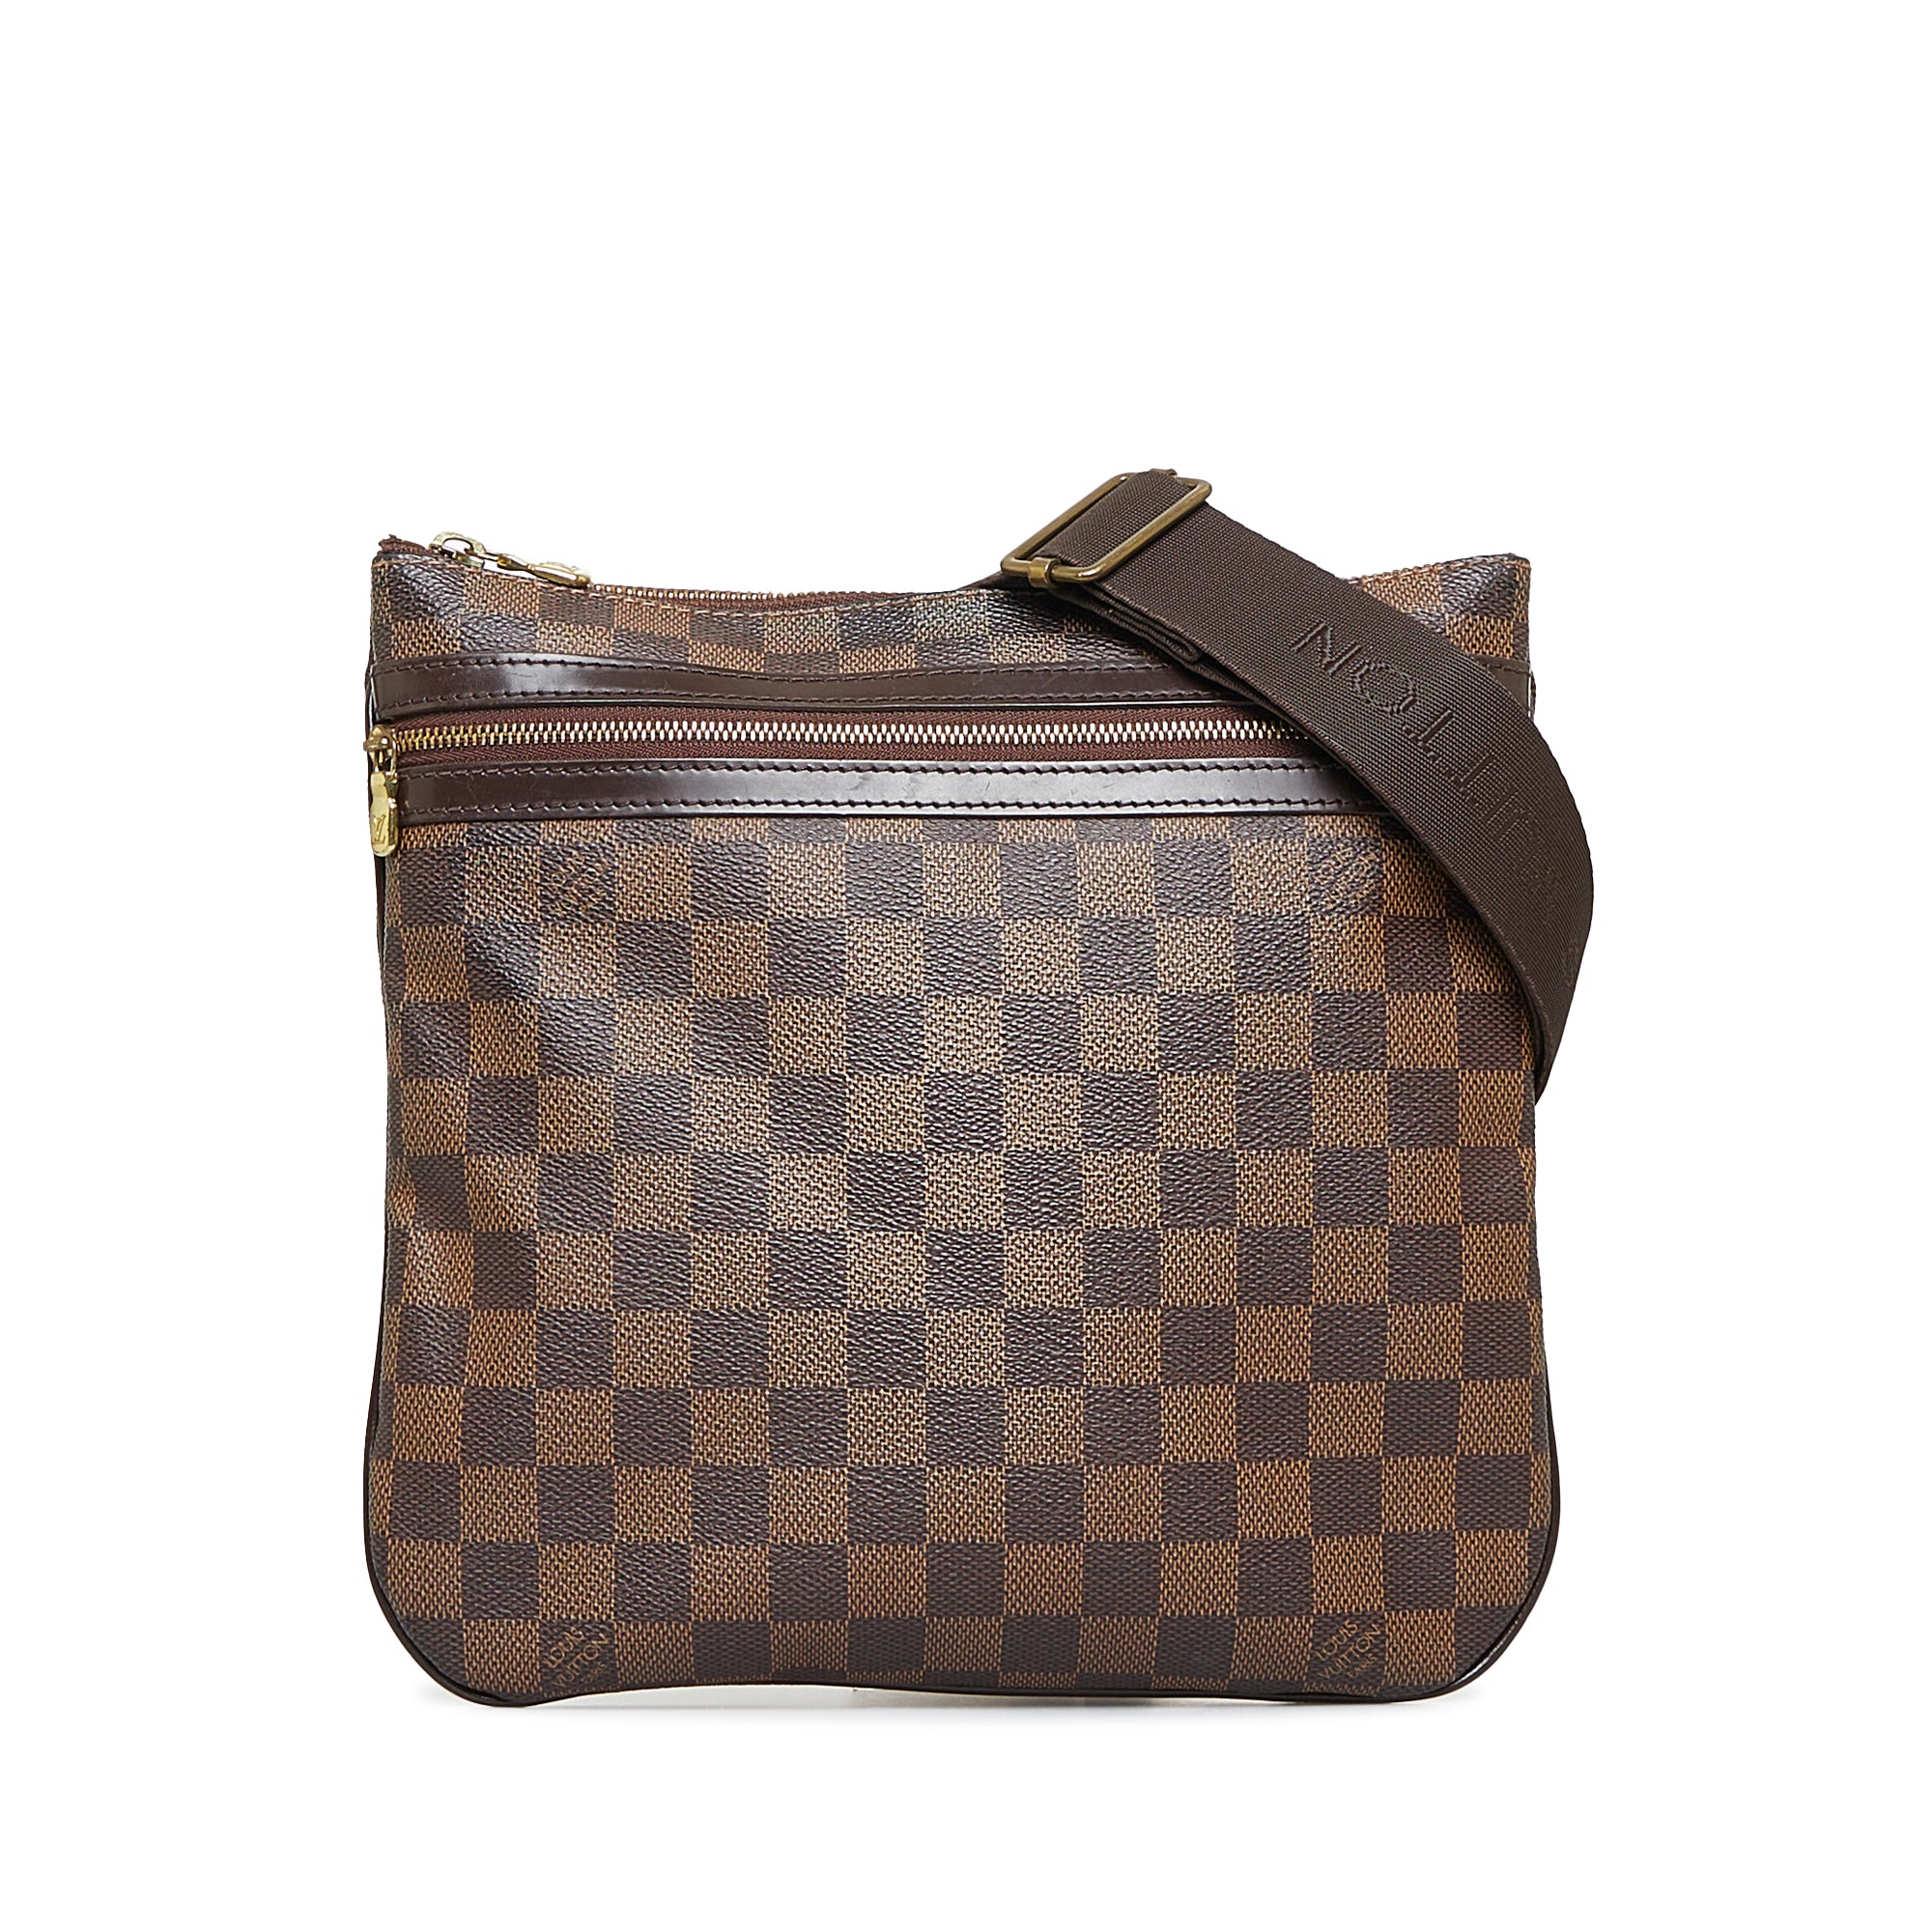 Cra-wallonieShops Revival  Louis Vuitton Olympe handbag in brown